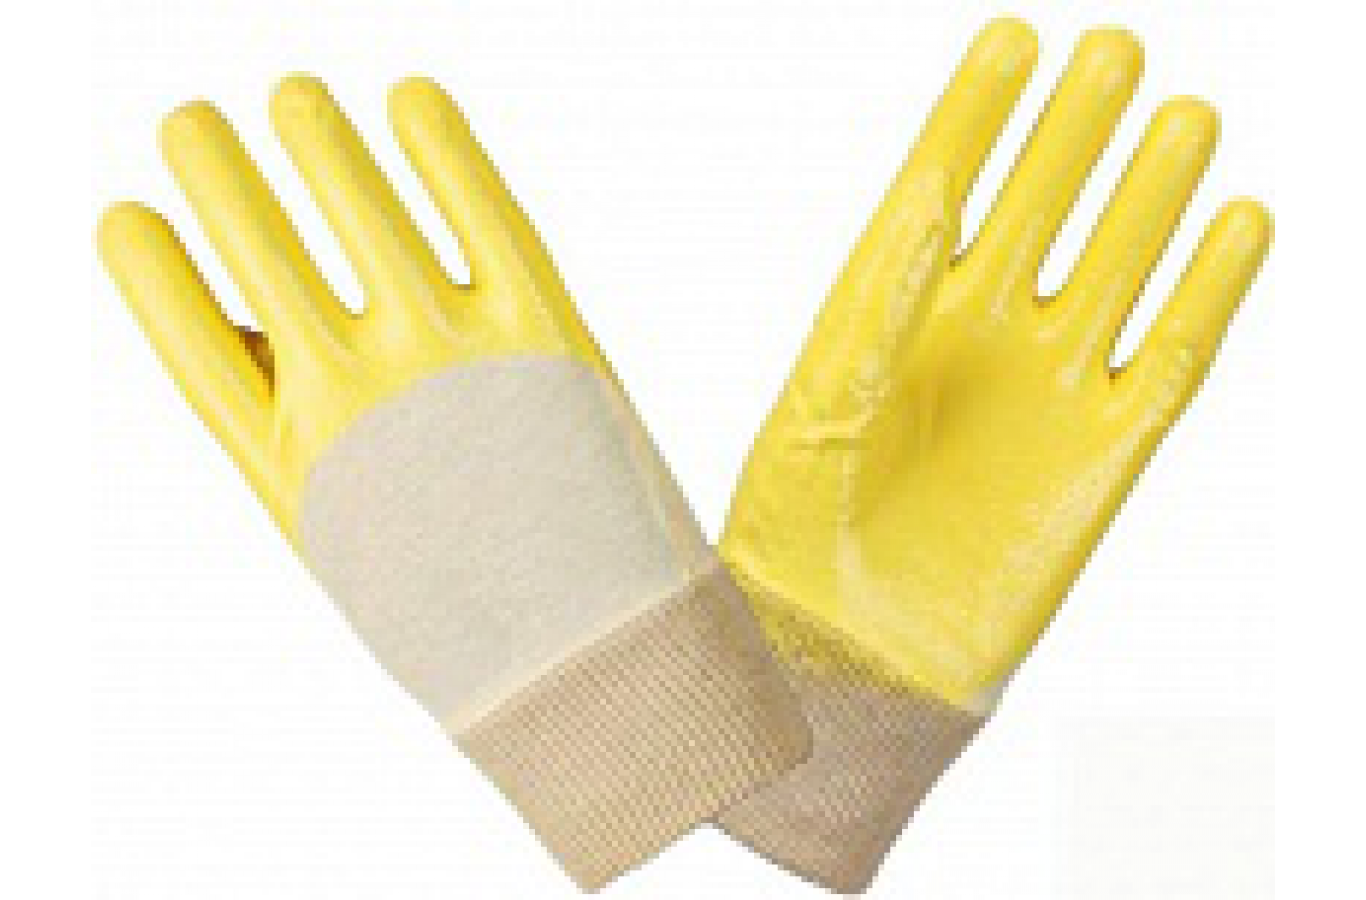 Перчатки нитриловые частичный облив облегченные манжет резинка, желтые